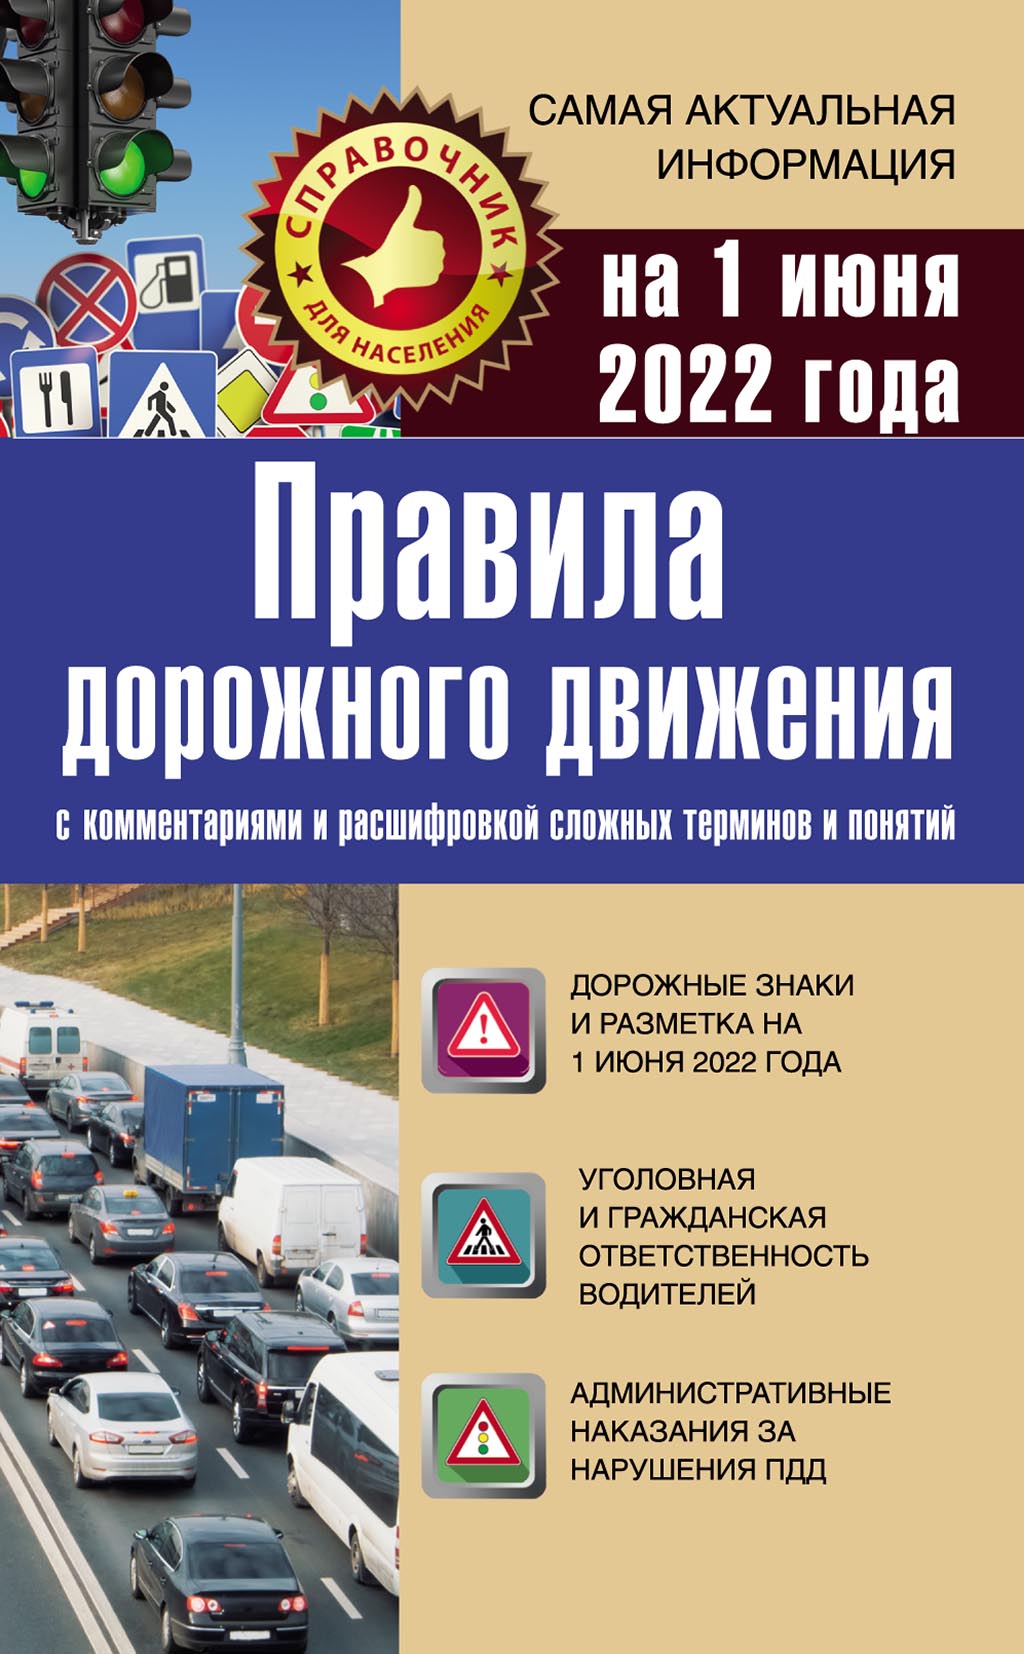 Правила дорожного движения на 1 мая 2019 года с комментариями и расшифровкой сложных терминов и понятий